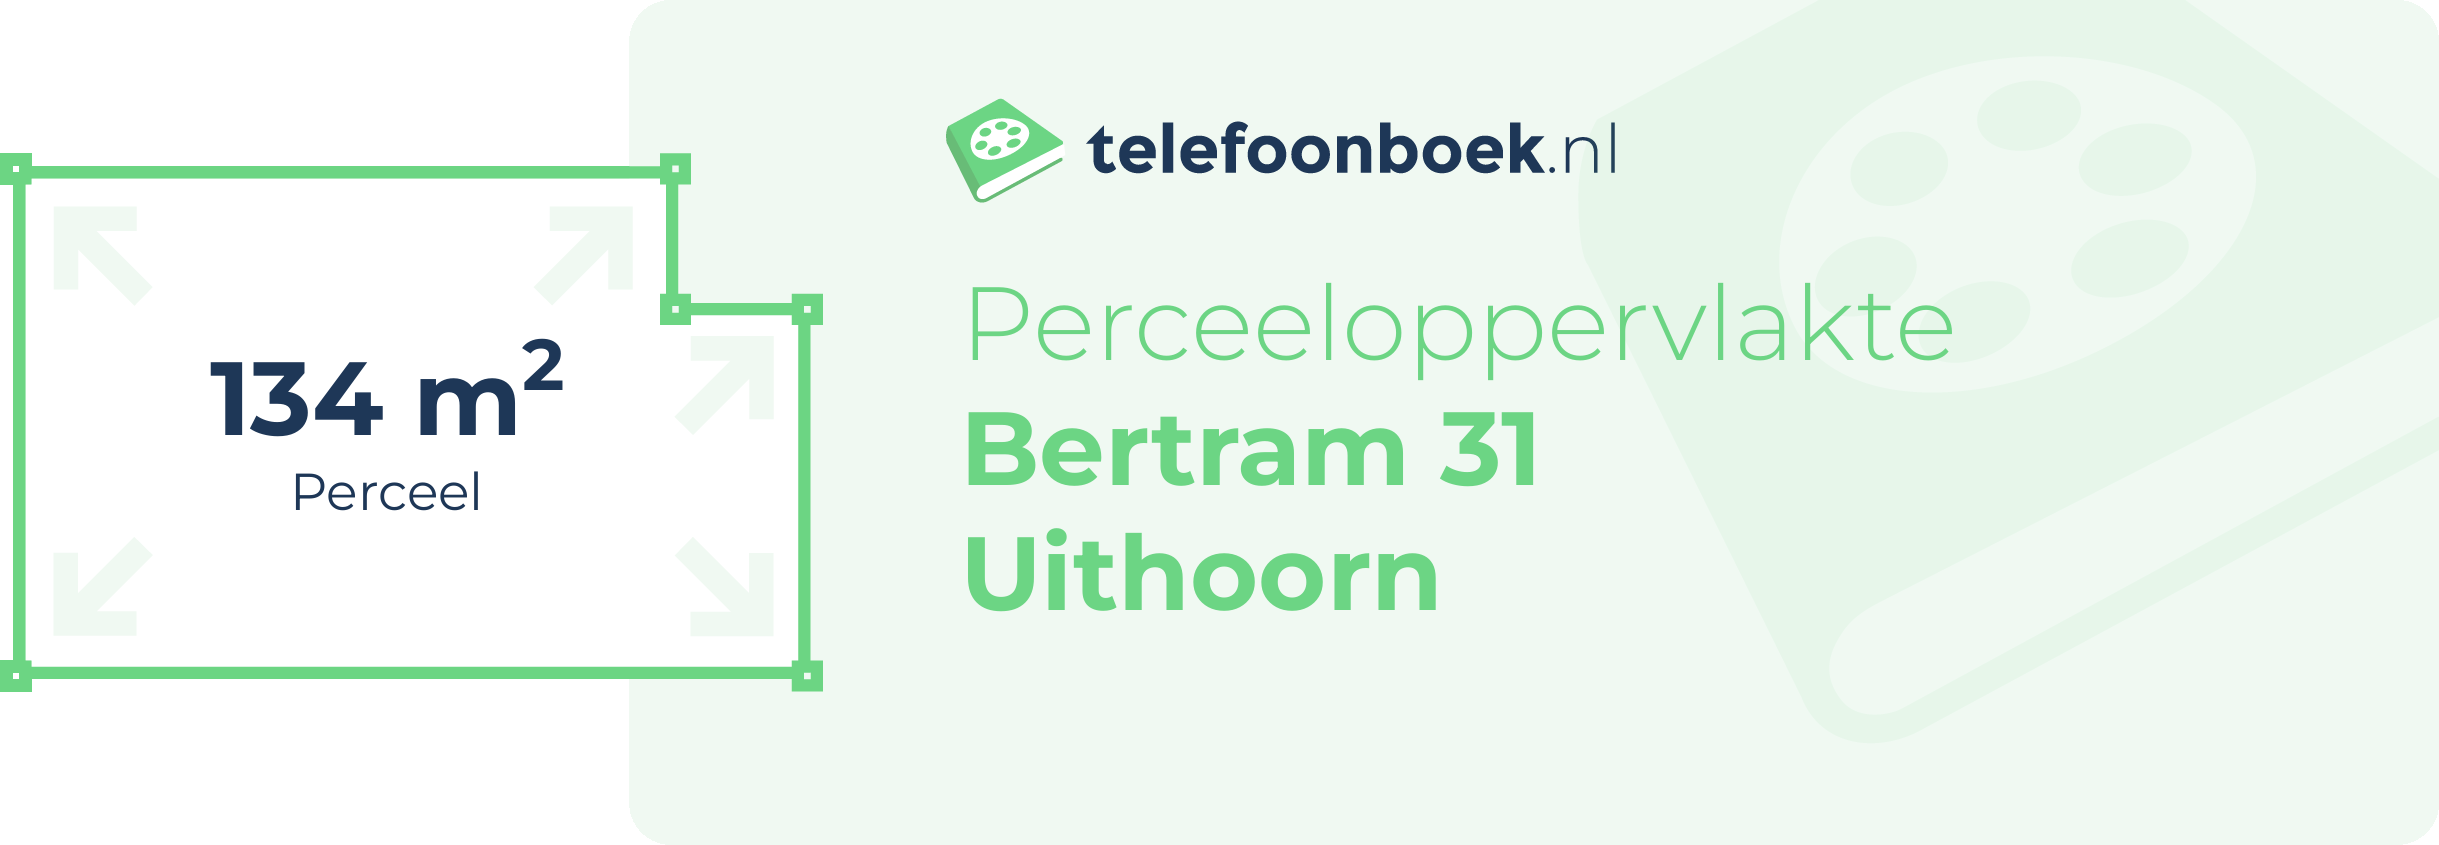 Perceeloppervlakte Bertram 31 Uithoorn